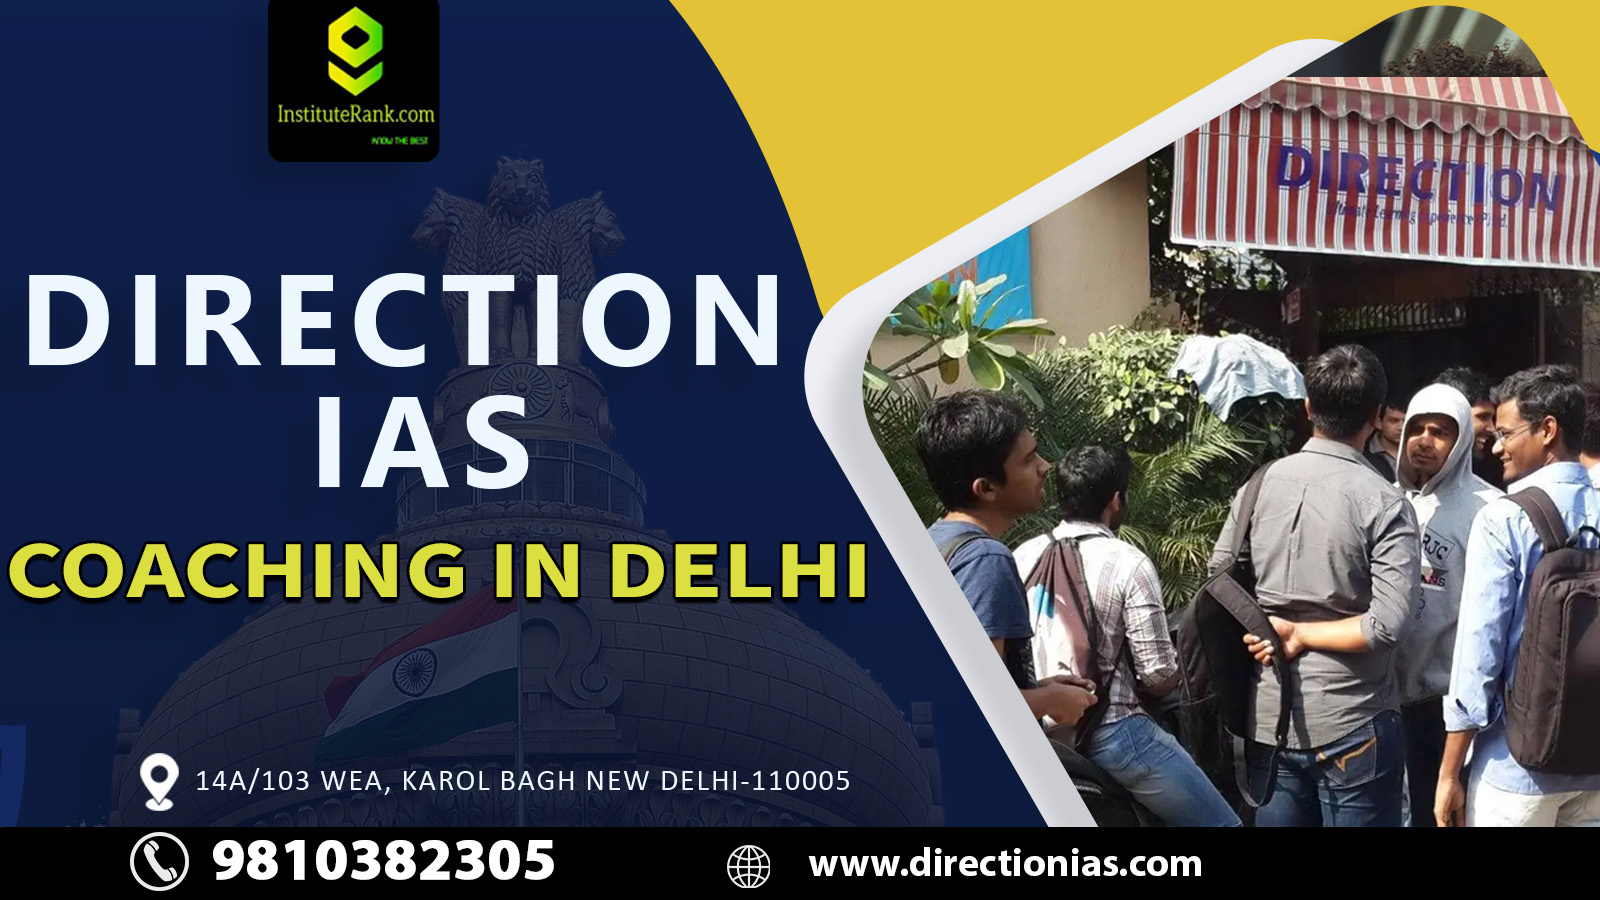 Direction IAS coaching in Delhi